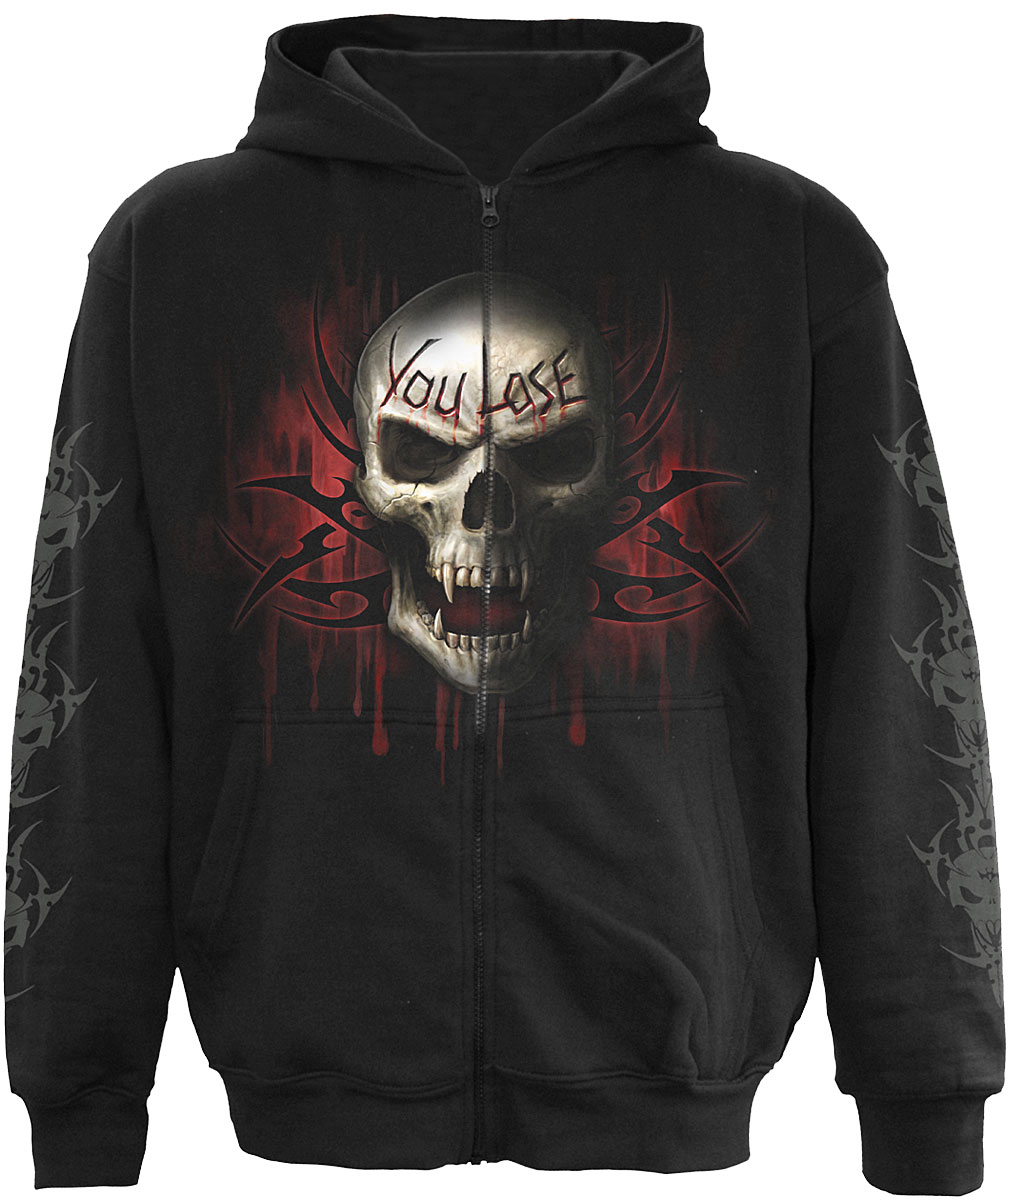 spiral direct death hoodies,black tribal hoodies,black mens hoodies,male tribal hoodies,gothic mens hoodies